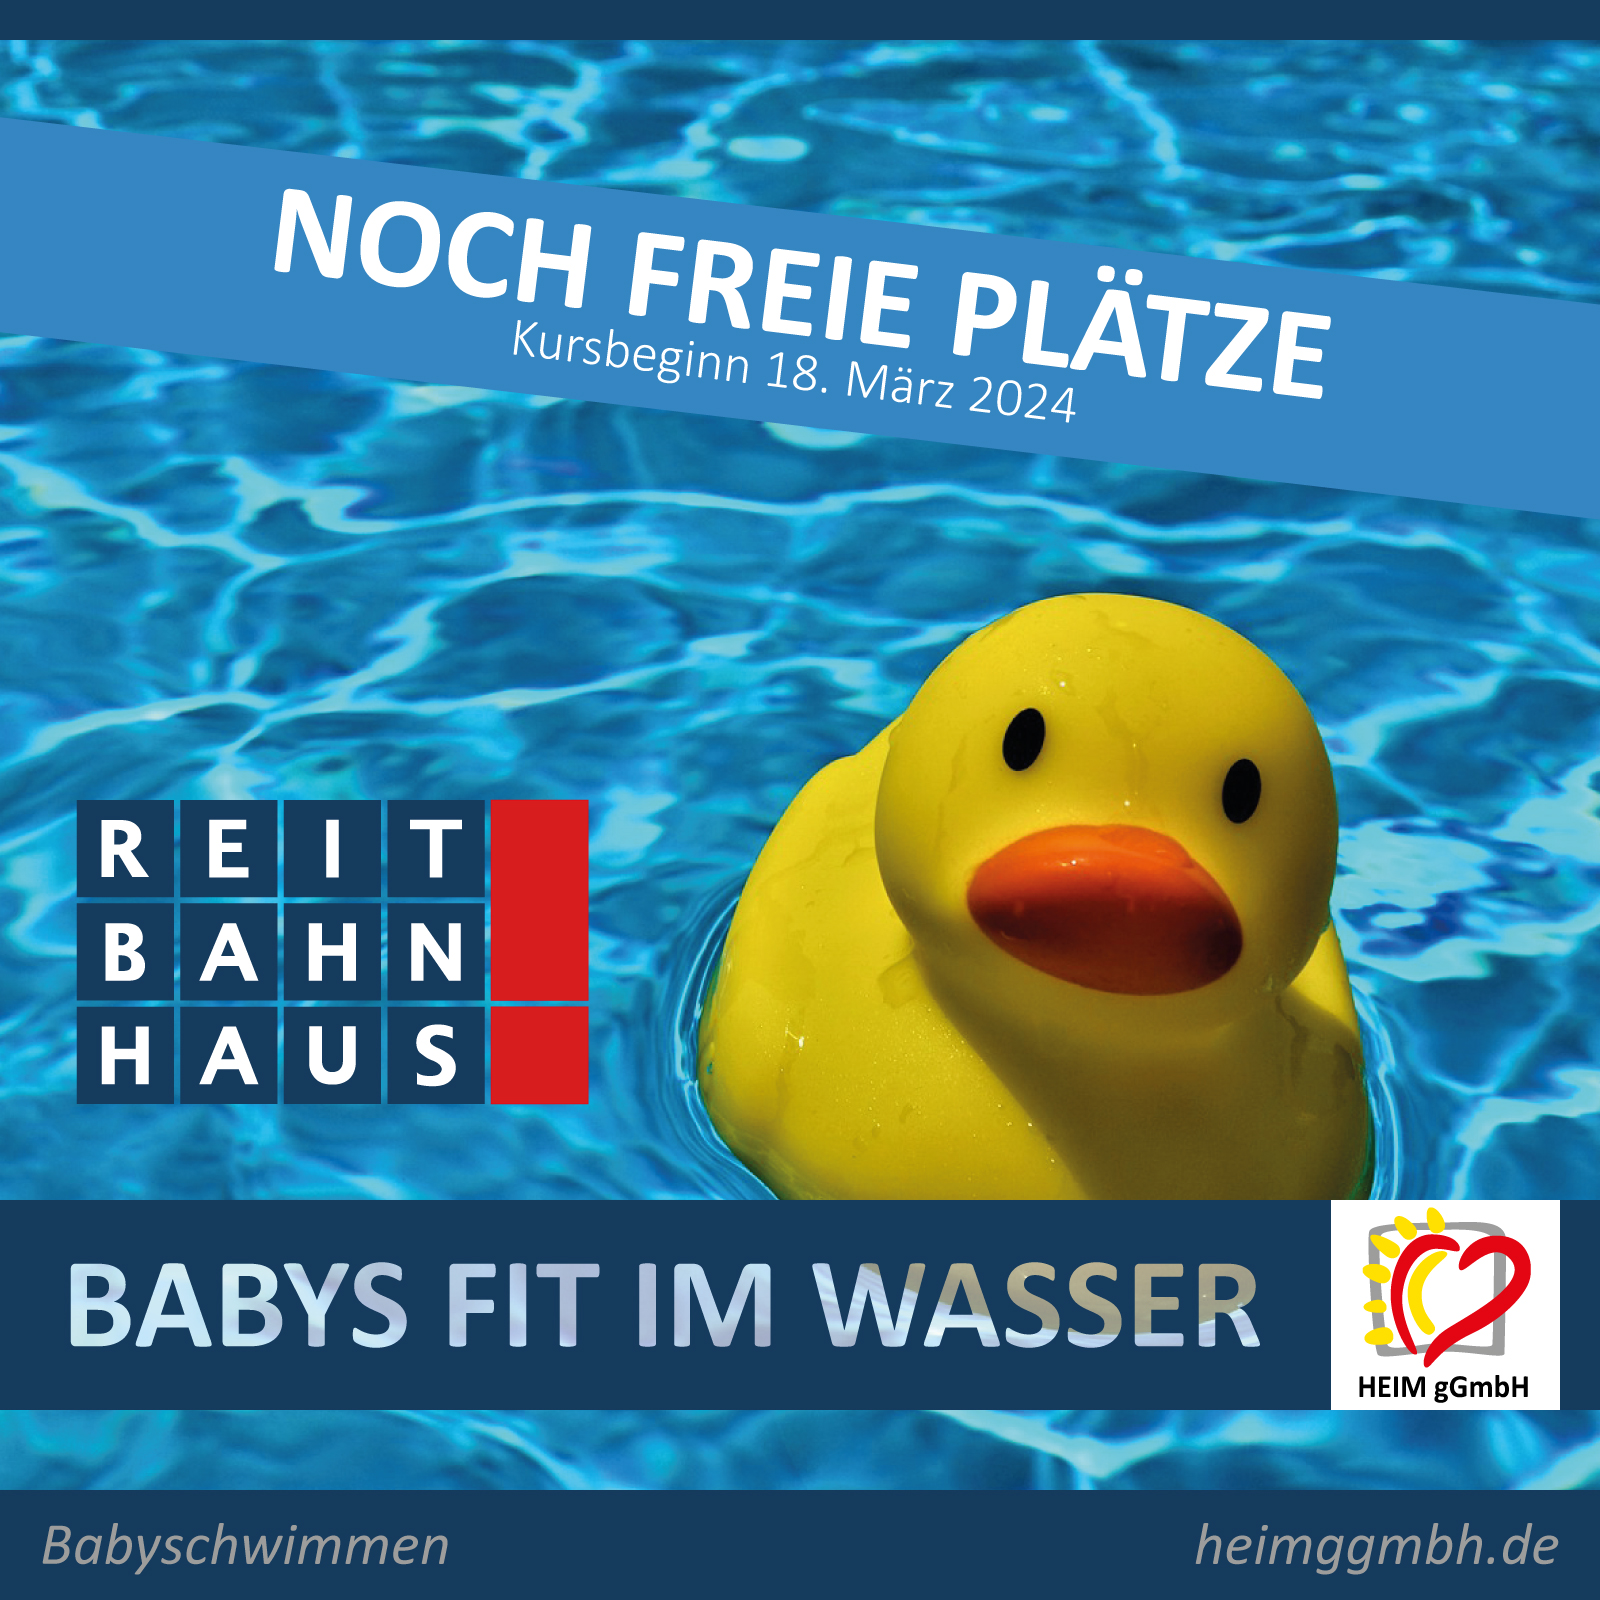 Noch ein paar freie Plätze für den Montags-Kurs im Babyschwimmen im Chemnitzer reitbahnhaus der HEIM gemeinnützigen GmbH